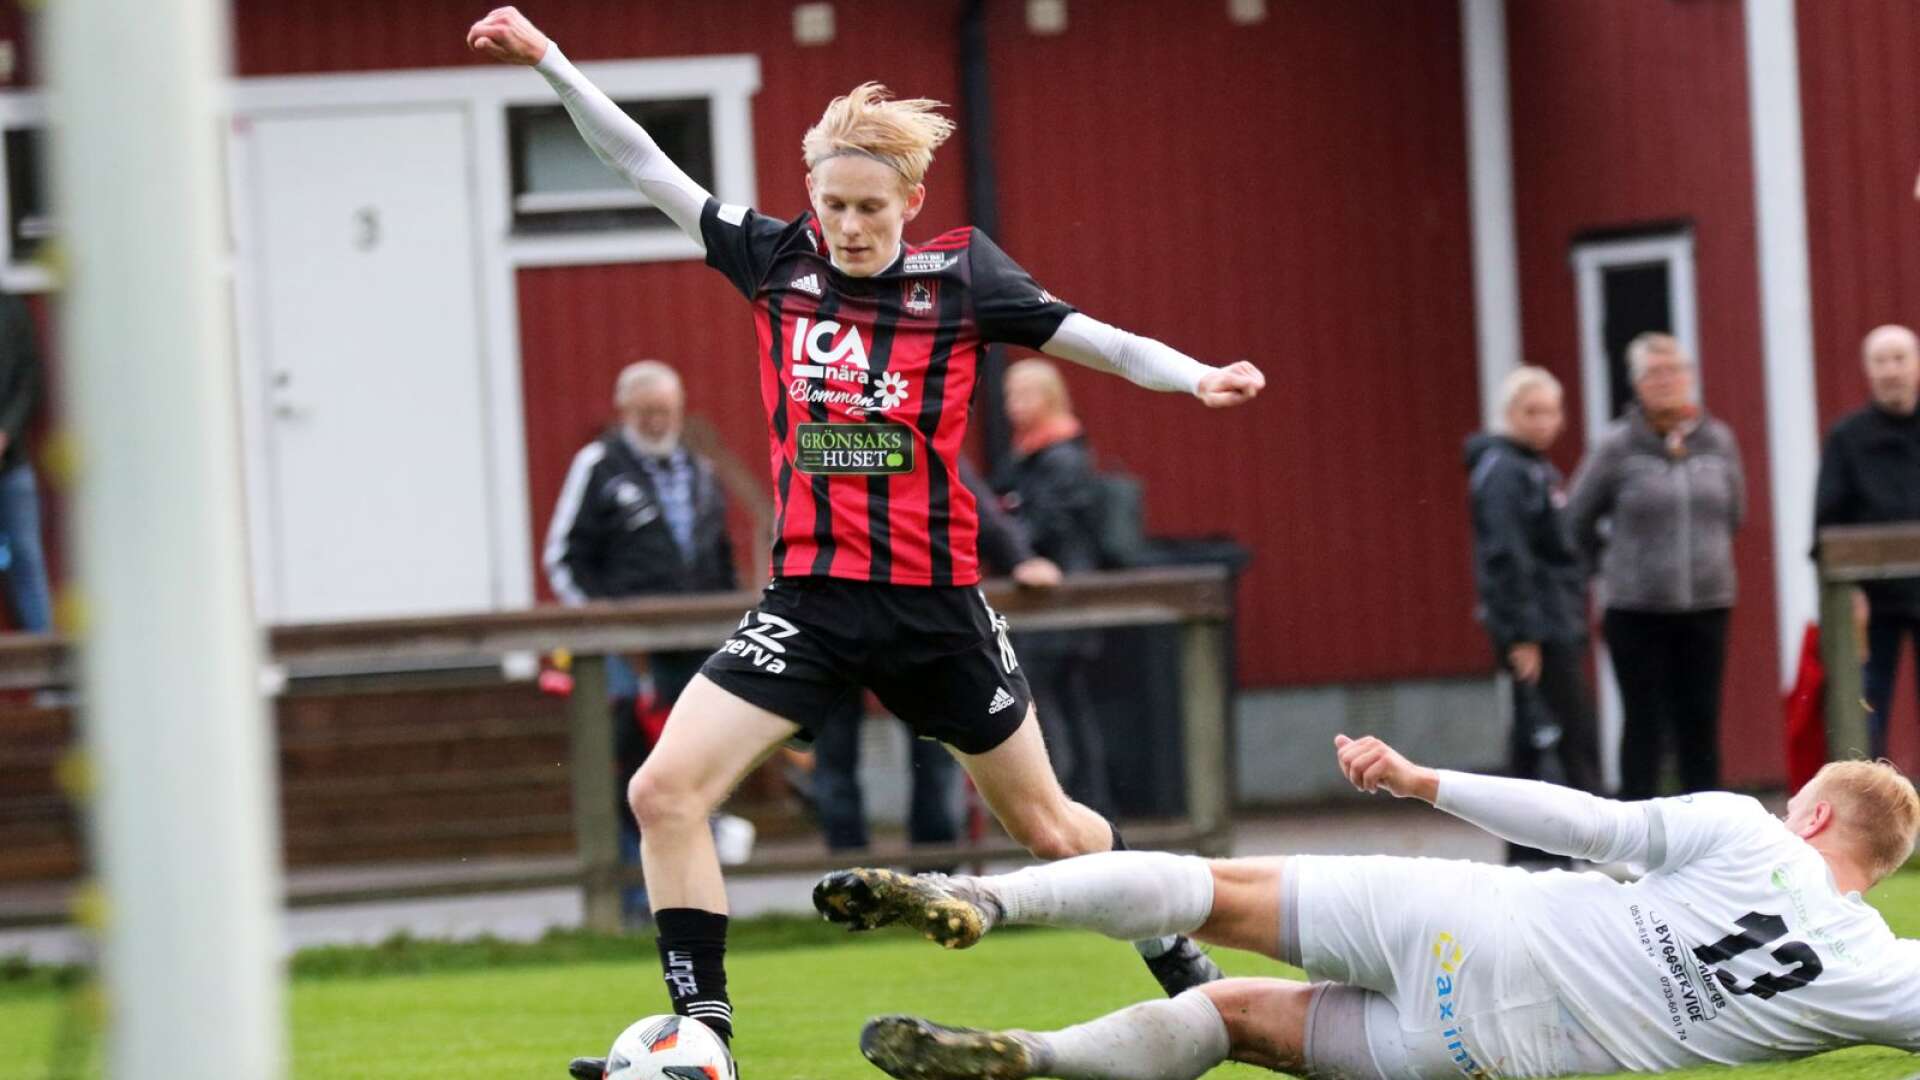 Ulvåkers IF och Arvid Eriksson spelade oavgjort mot Ekedalens SK på bortaplan.